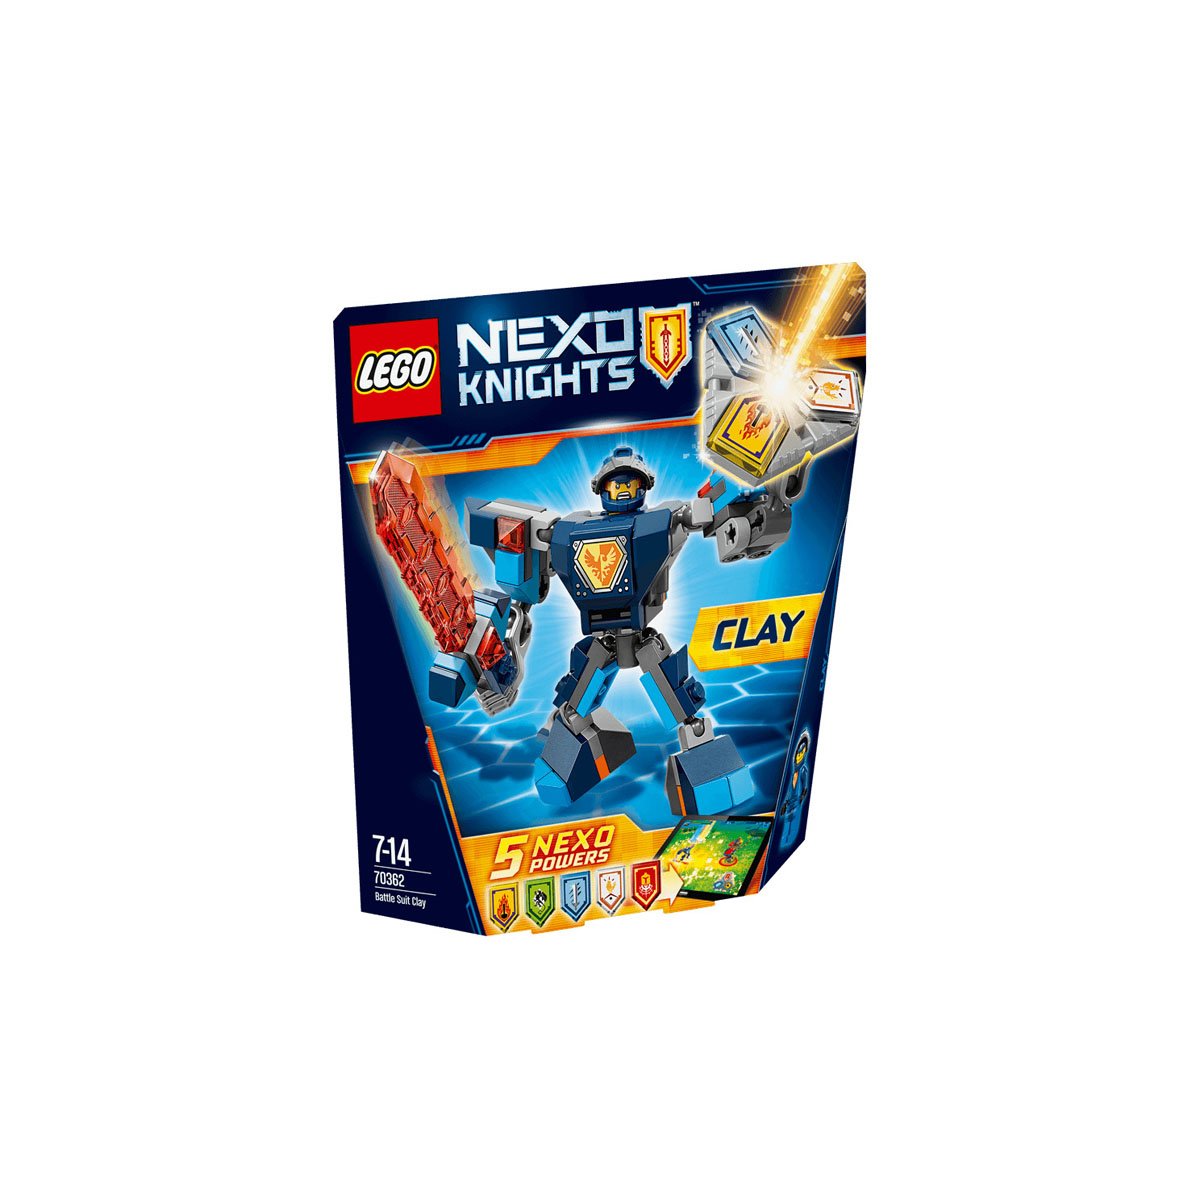 Clay con Armadura de Combate Lego